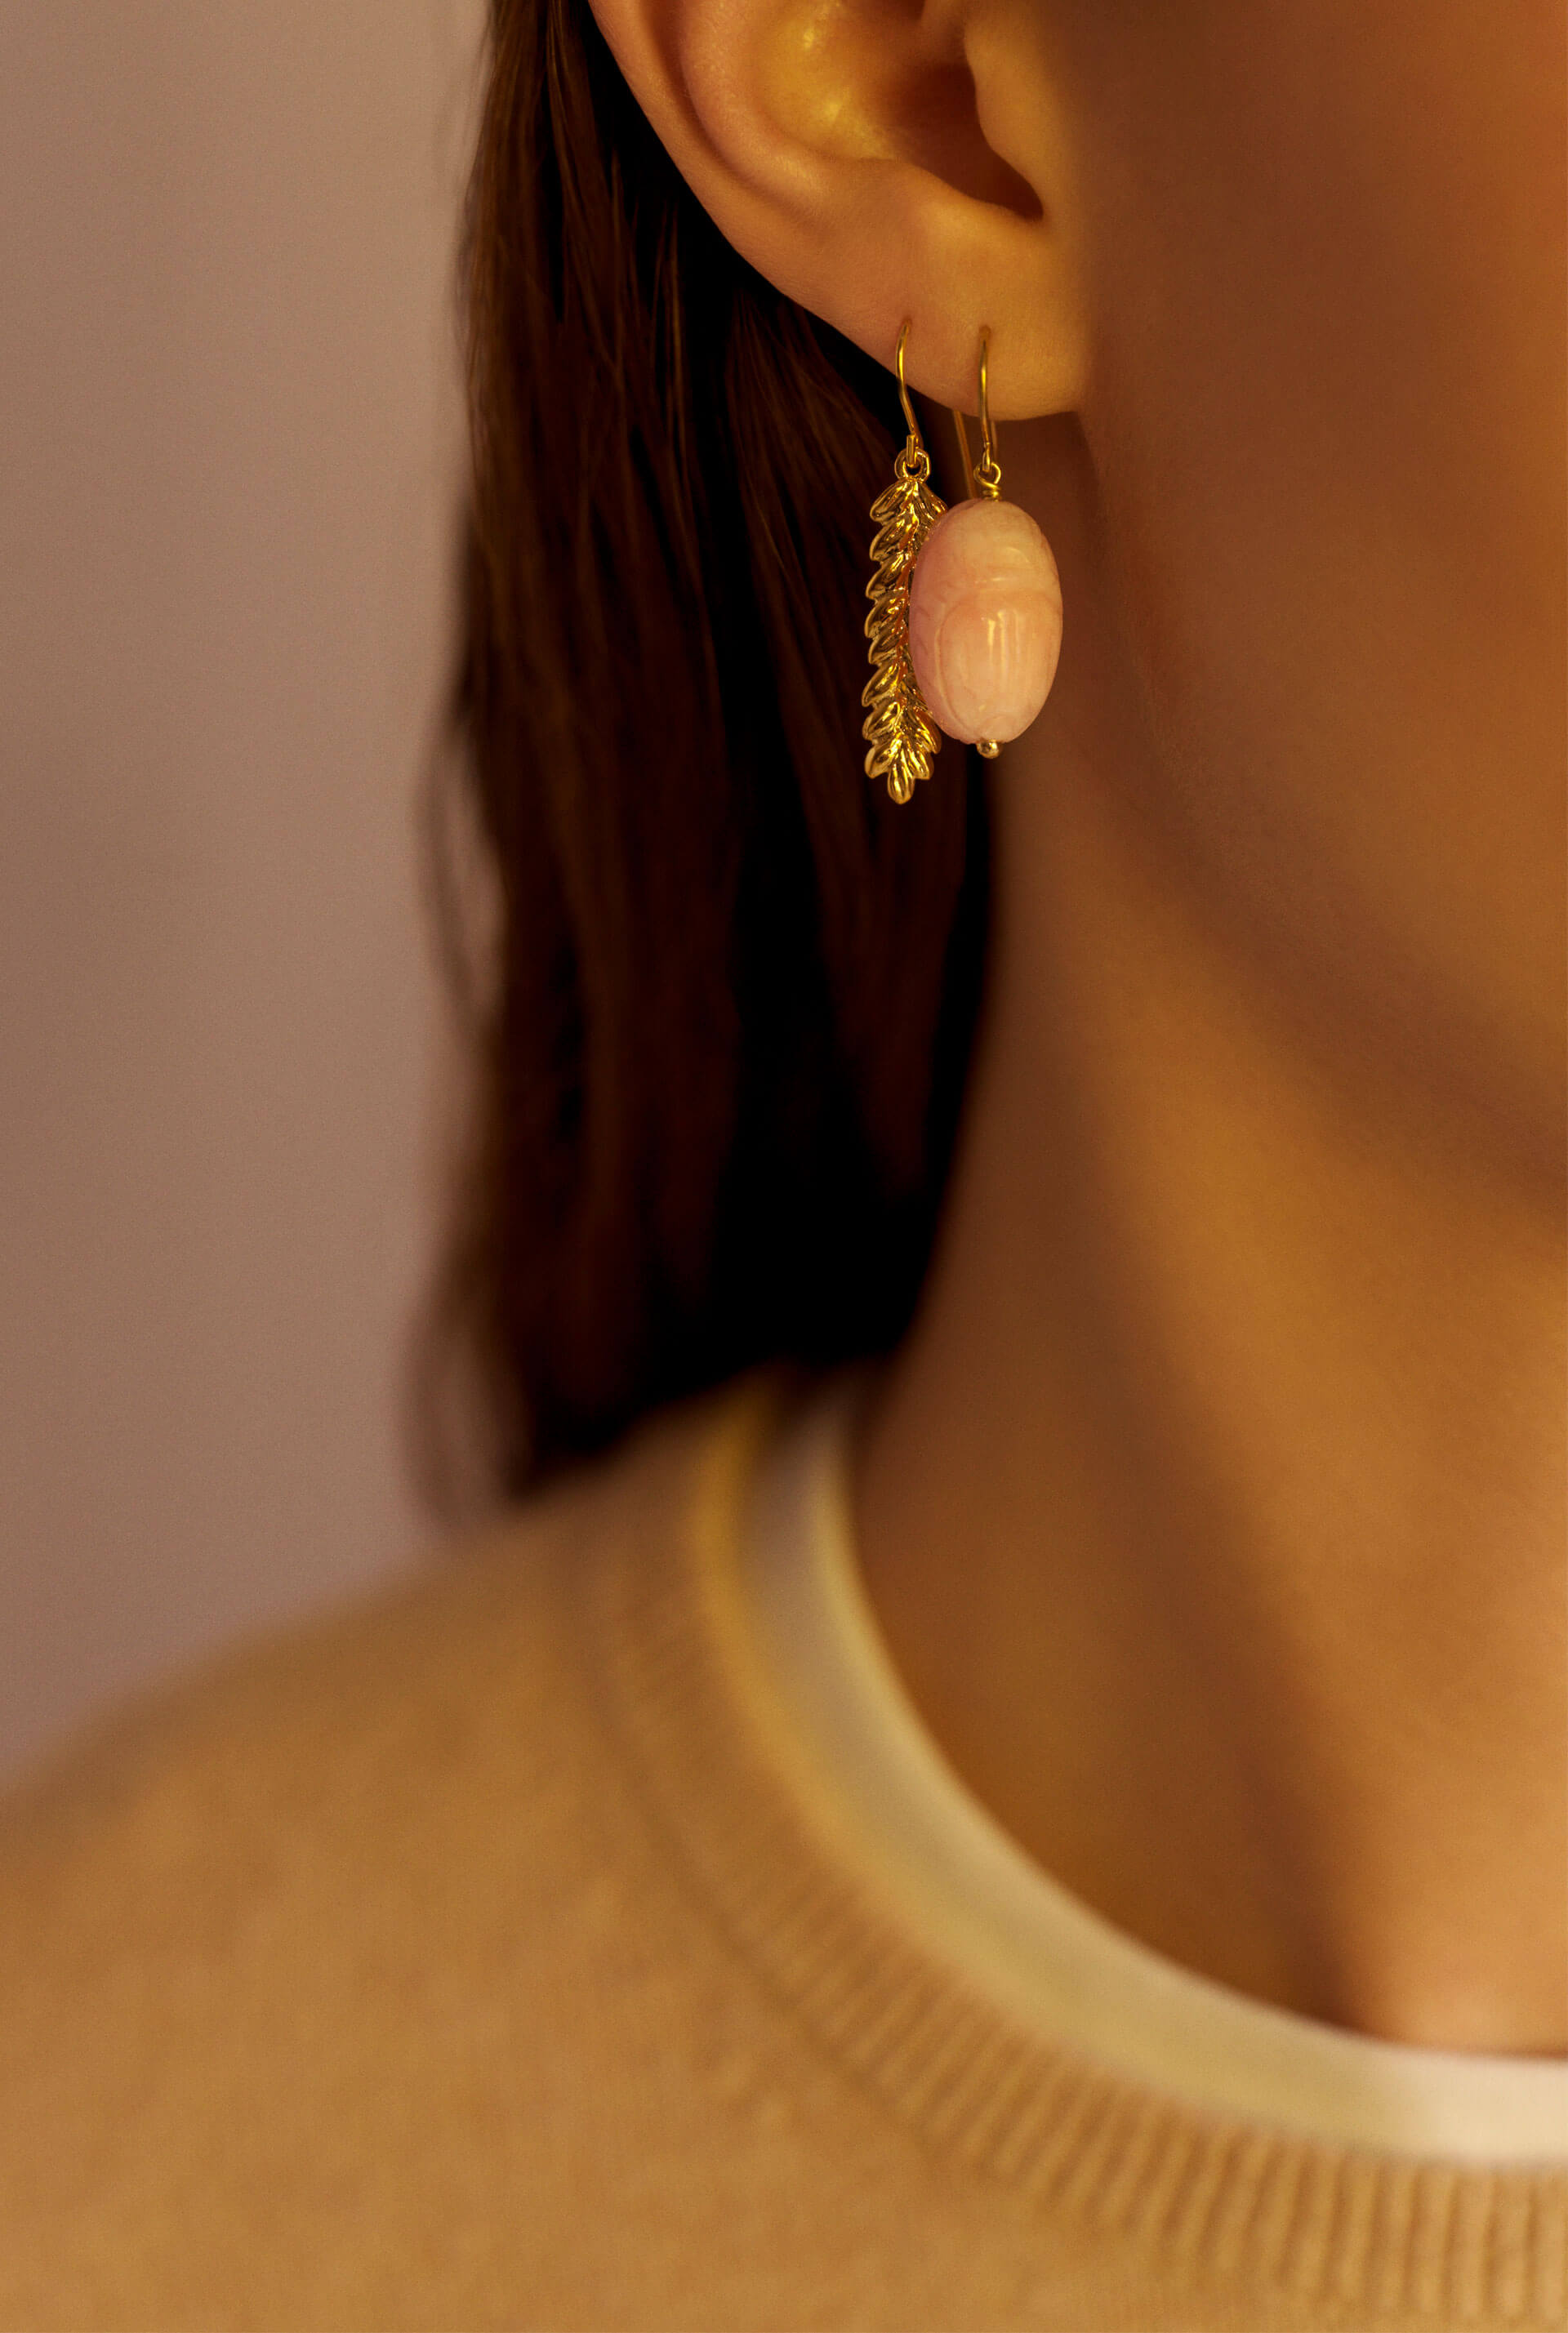 Aurélie Blé sleeper gold plated earring - Aurélie Bidermann